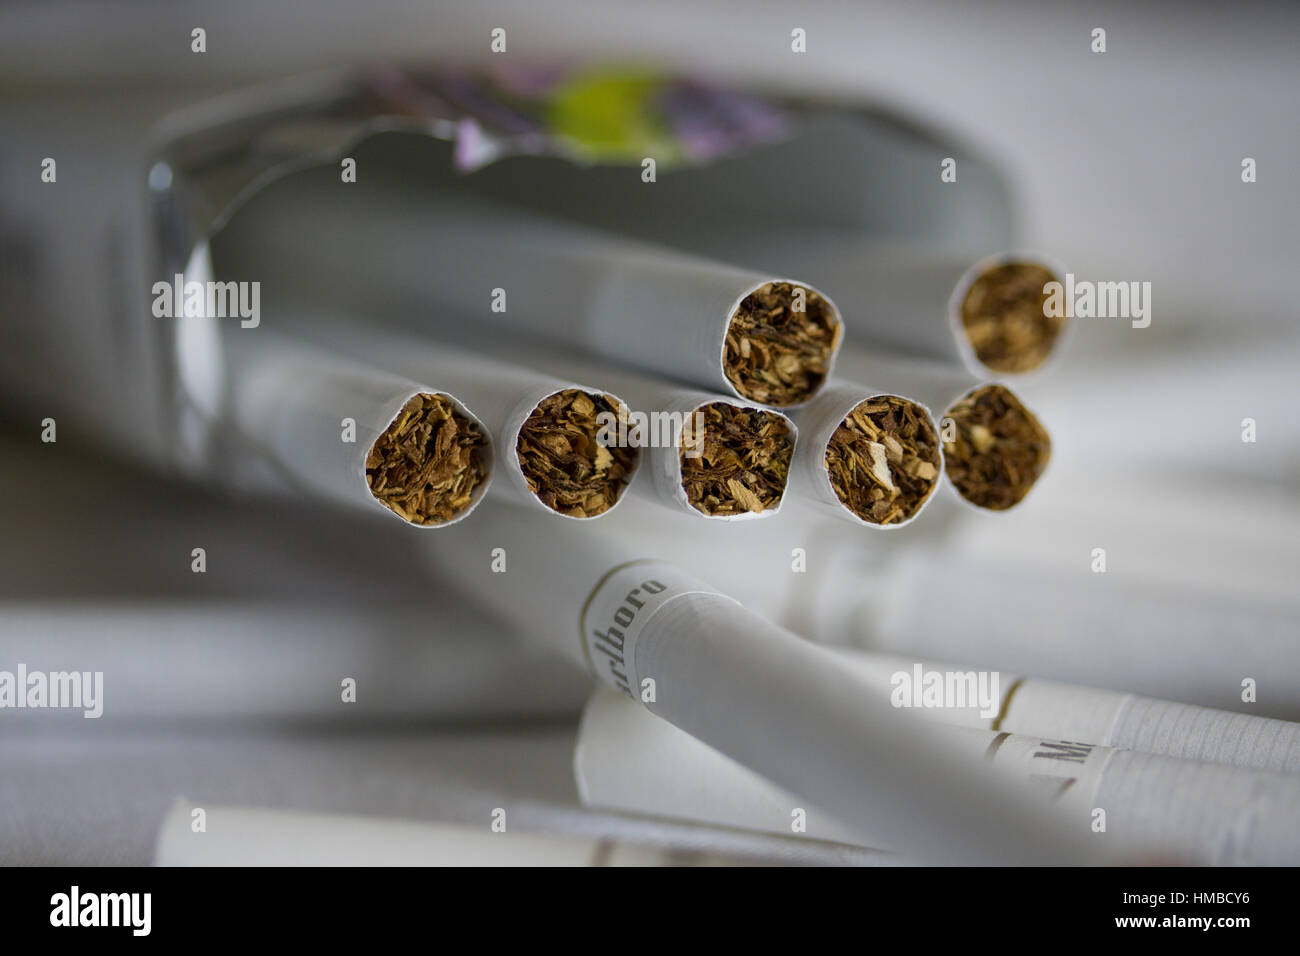 Konzept Bild in Bezug auf die Gefahren von Rauchen von Zigaretten Stockfoto